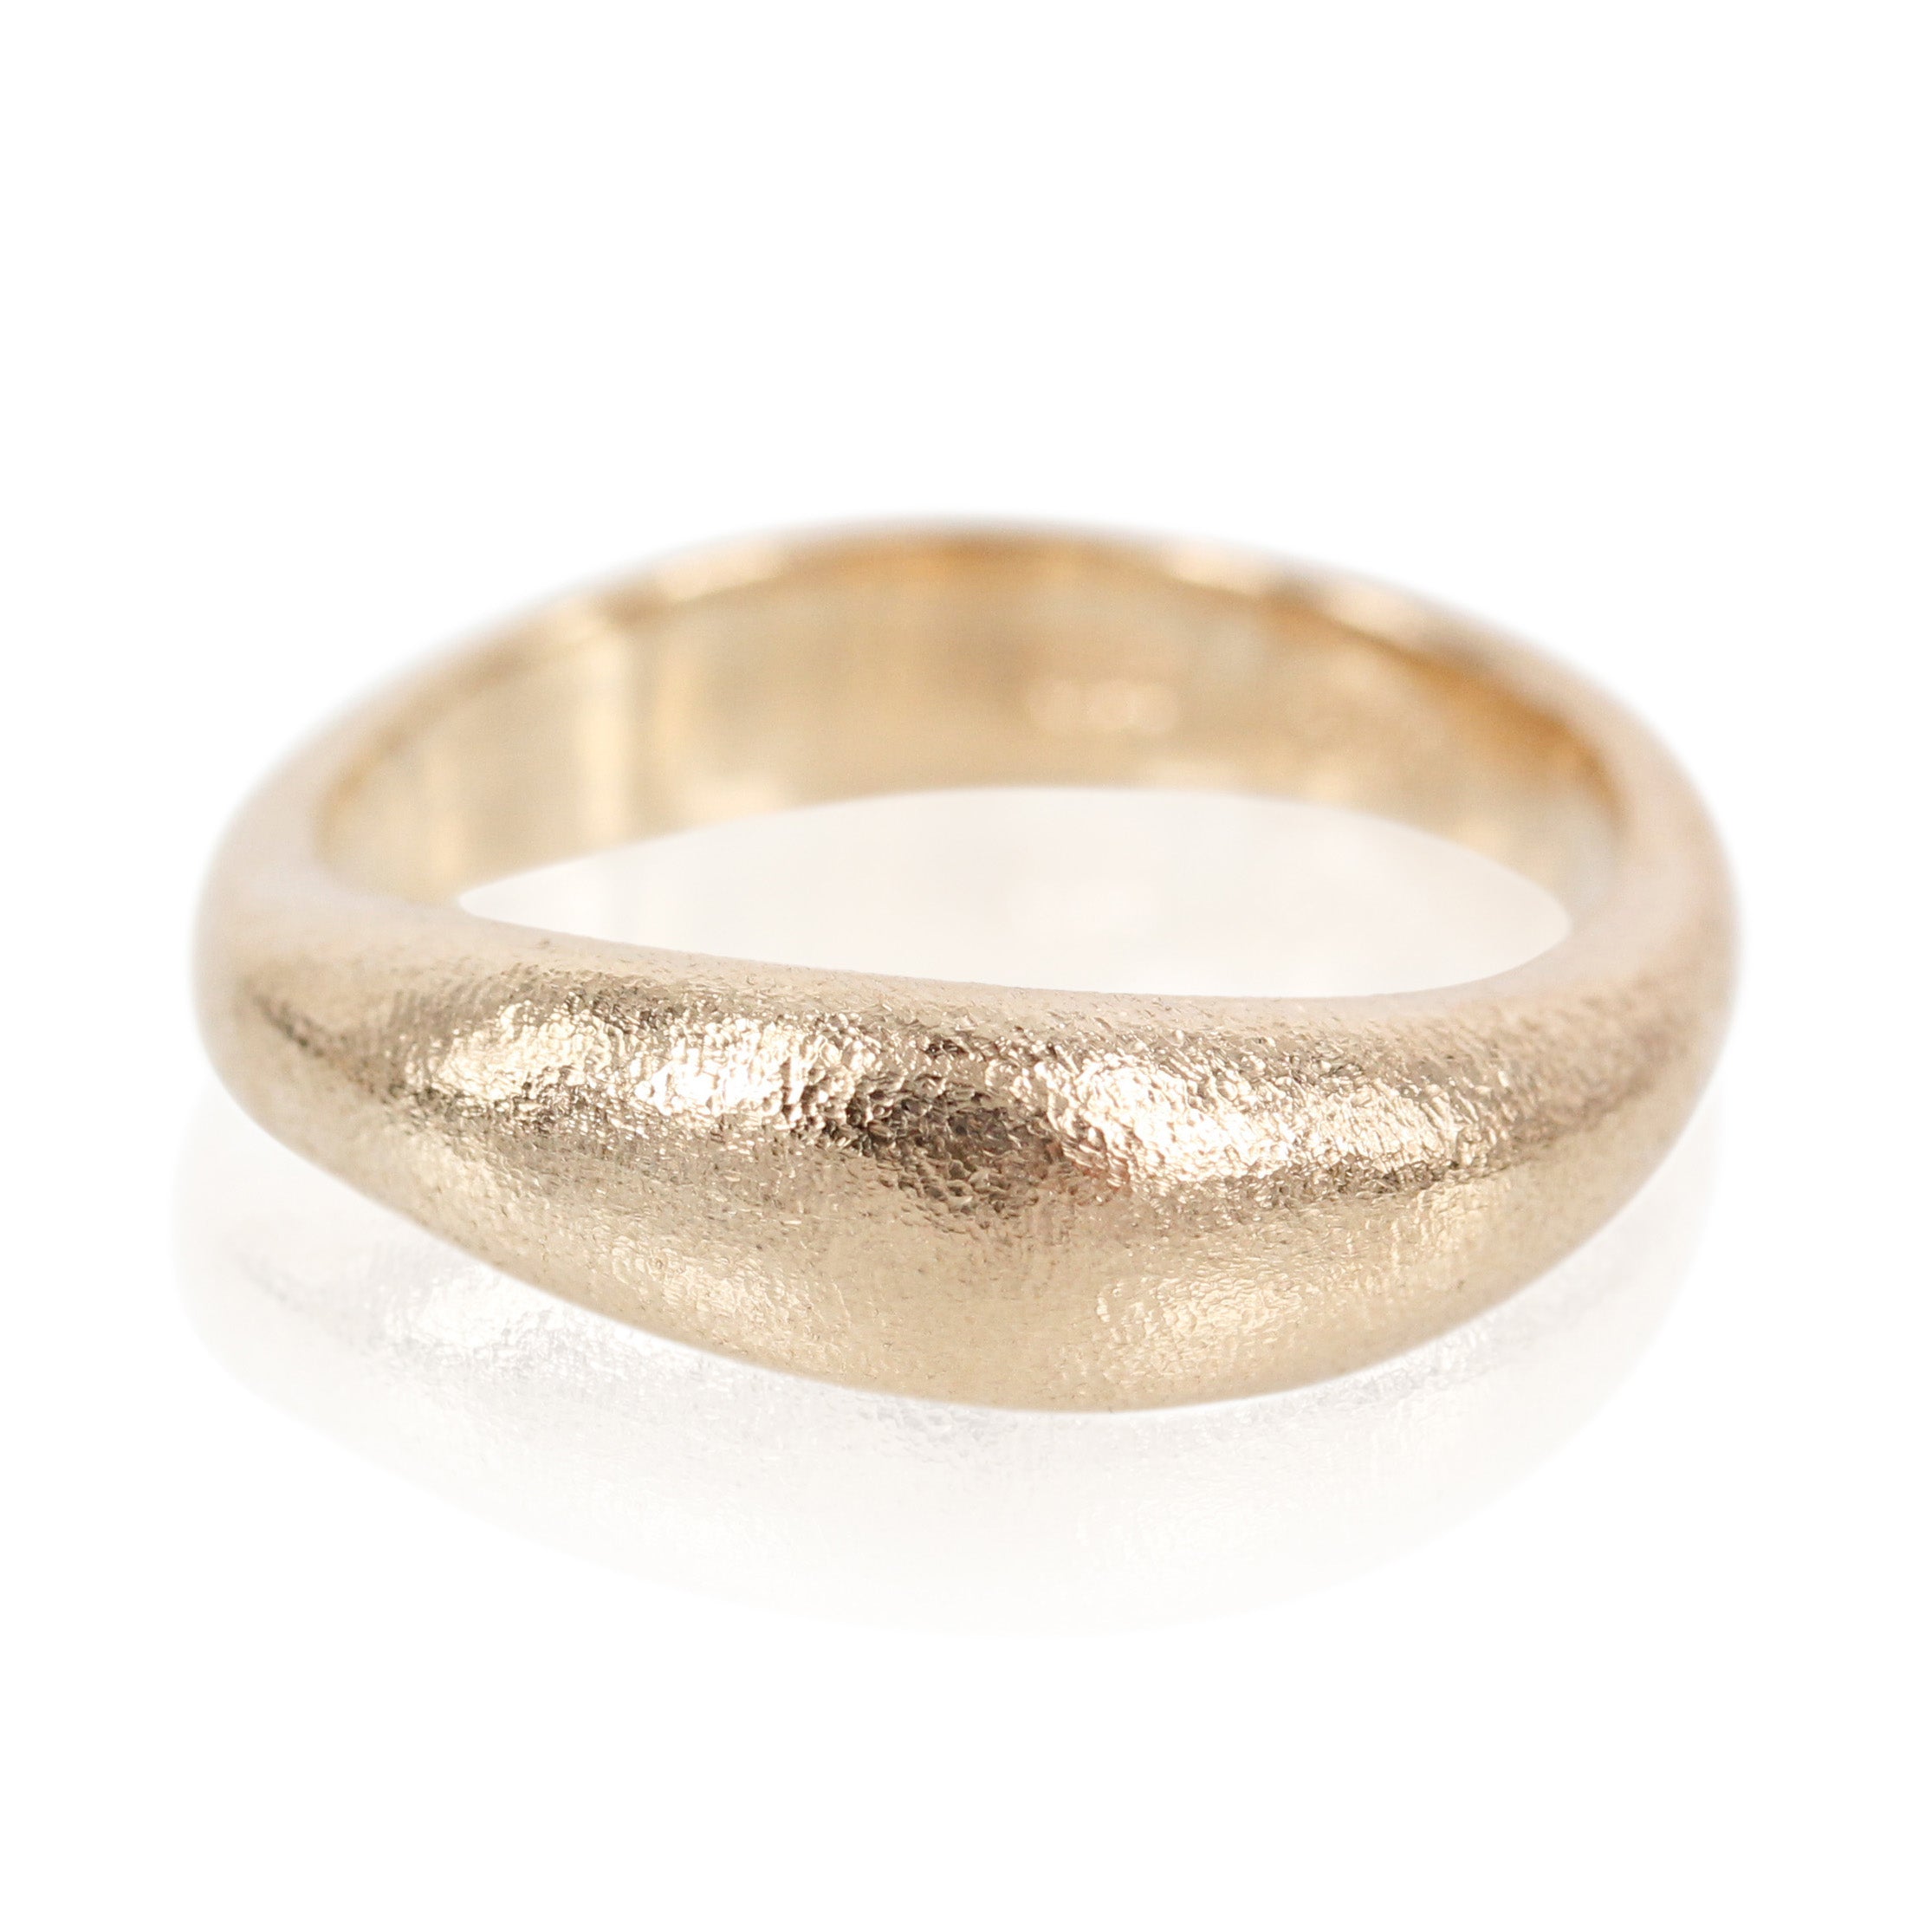 Smuk organisk ring, men helt bløde former og smukke hvælvinger, der kan isættes diamanter i ringen efter ønske